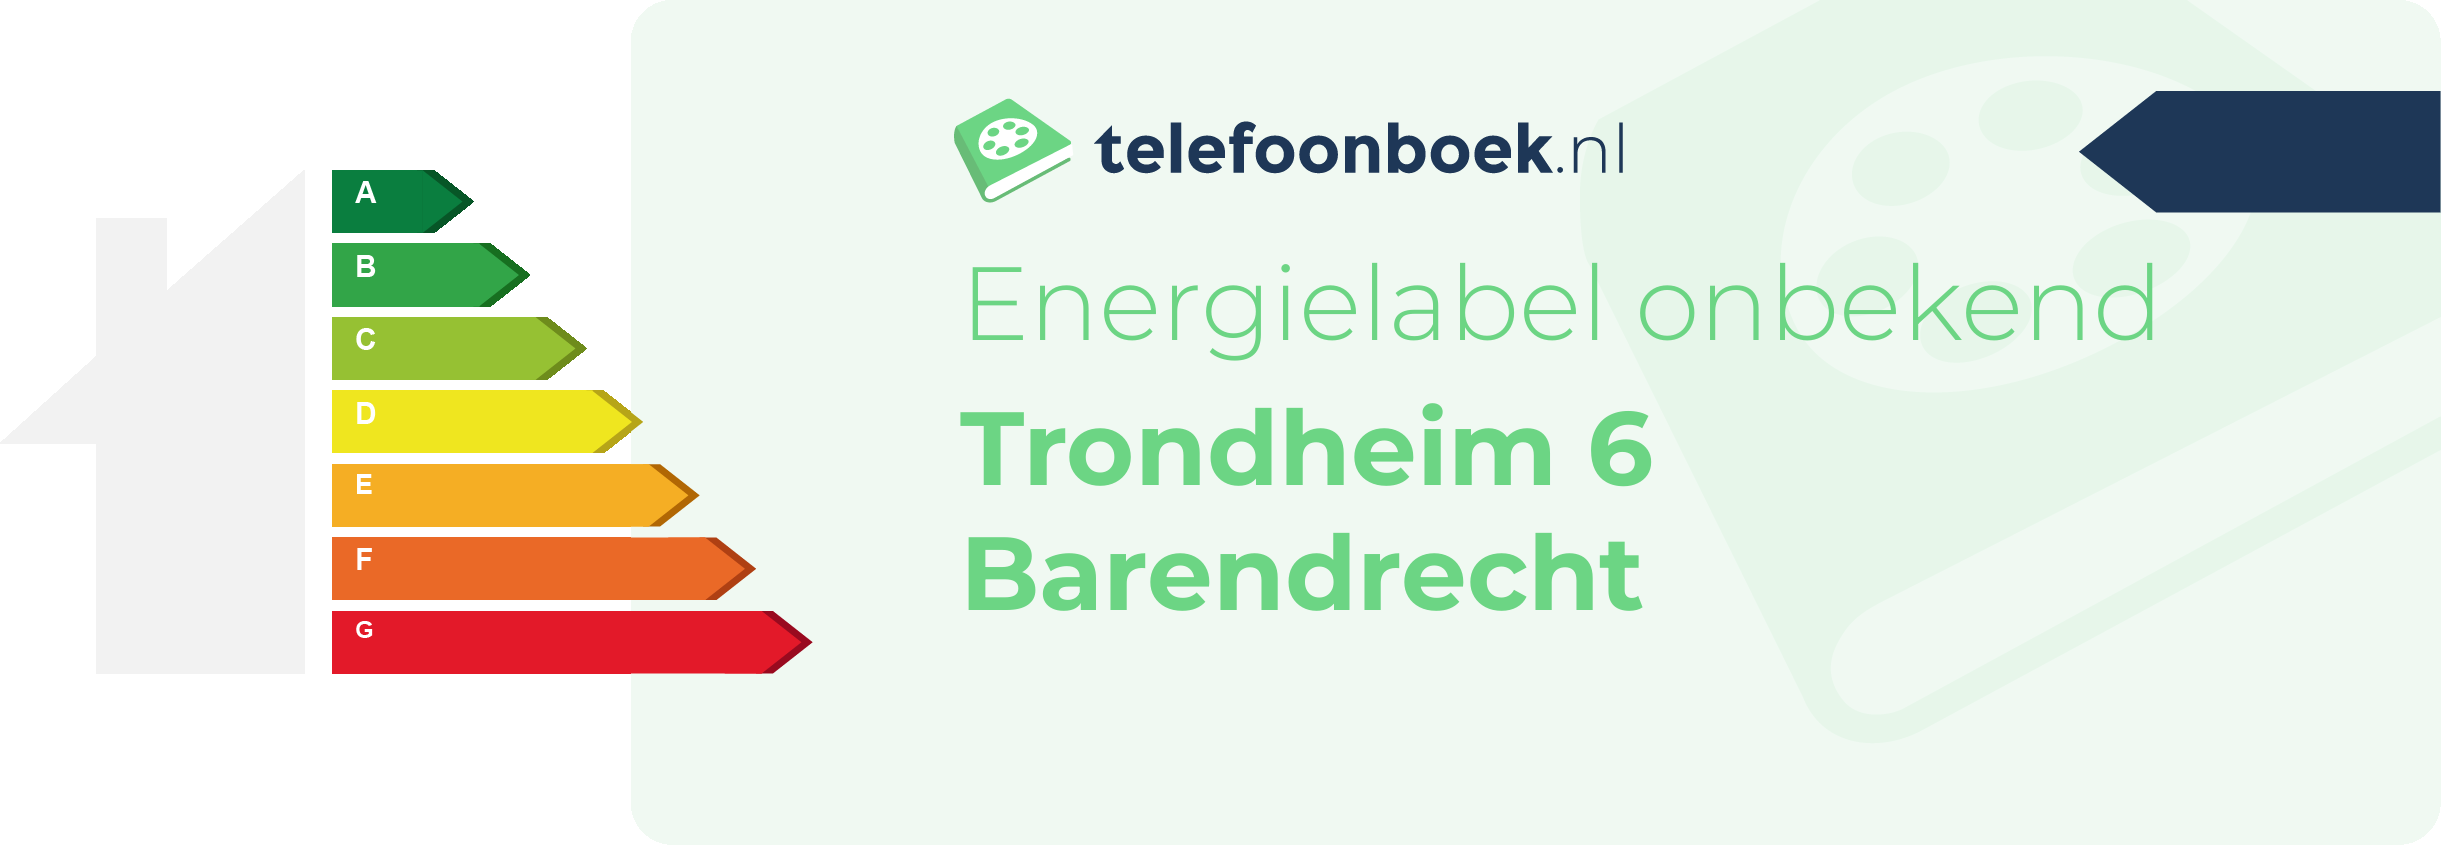 Energielabel Trondheim 6 Barendrecht